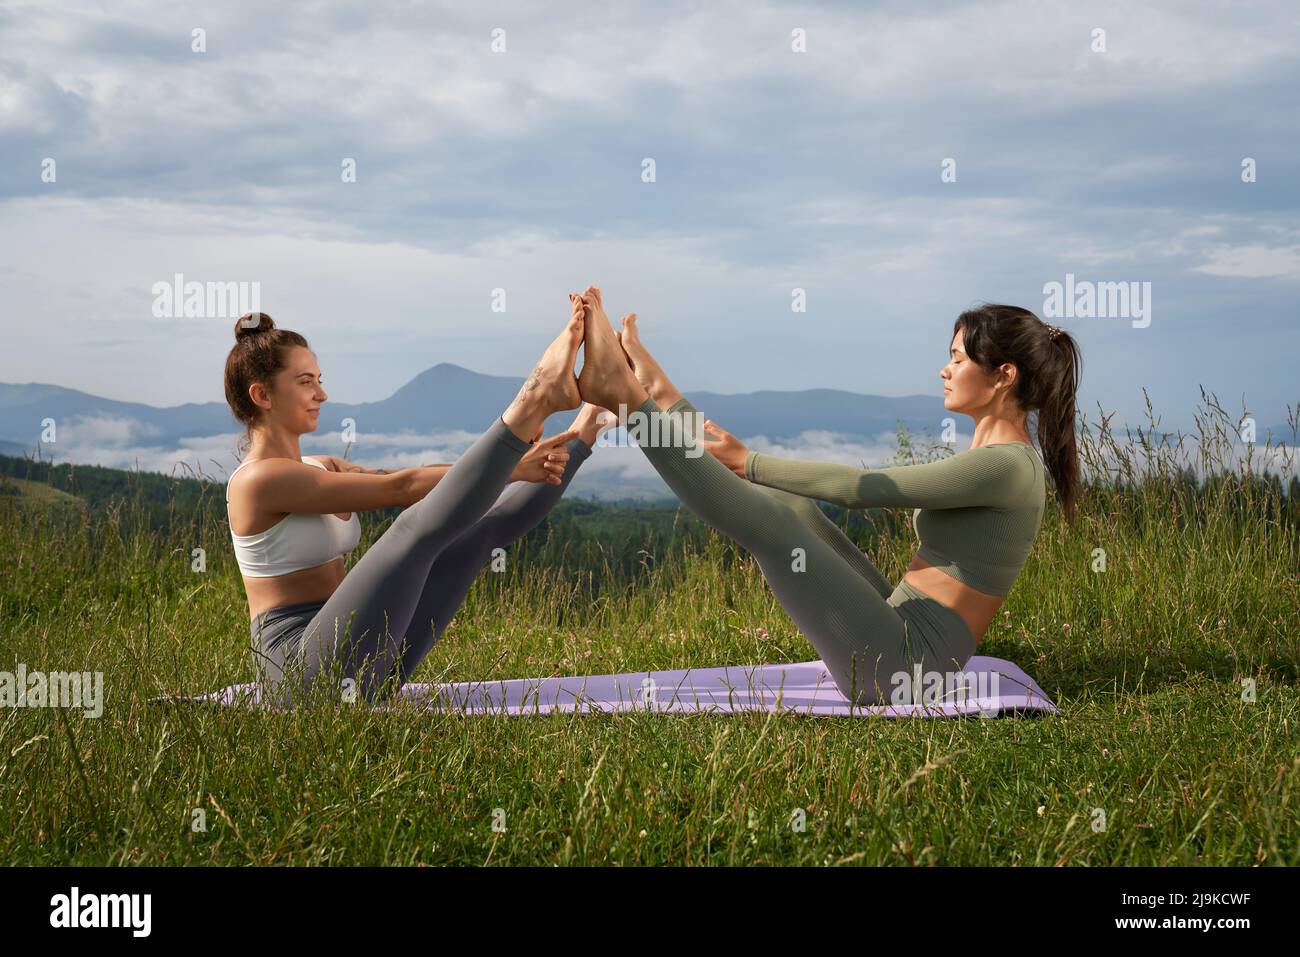 Zwei kaukasische Frauen in aktivem Ohr machen akrobatischen Yoga an frischer Luft. Junge Damen sitzen auf einem Yogamann und strecken die Beine zusammen. Konzept für einen gesunden Lebensstil. Stockfoto